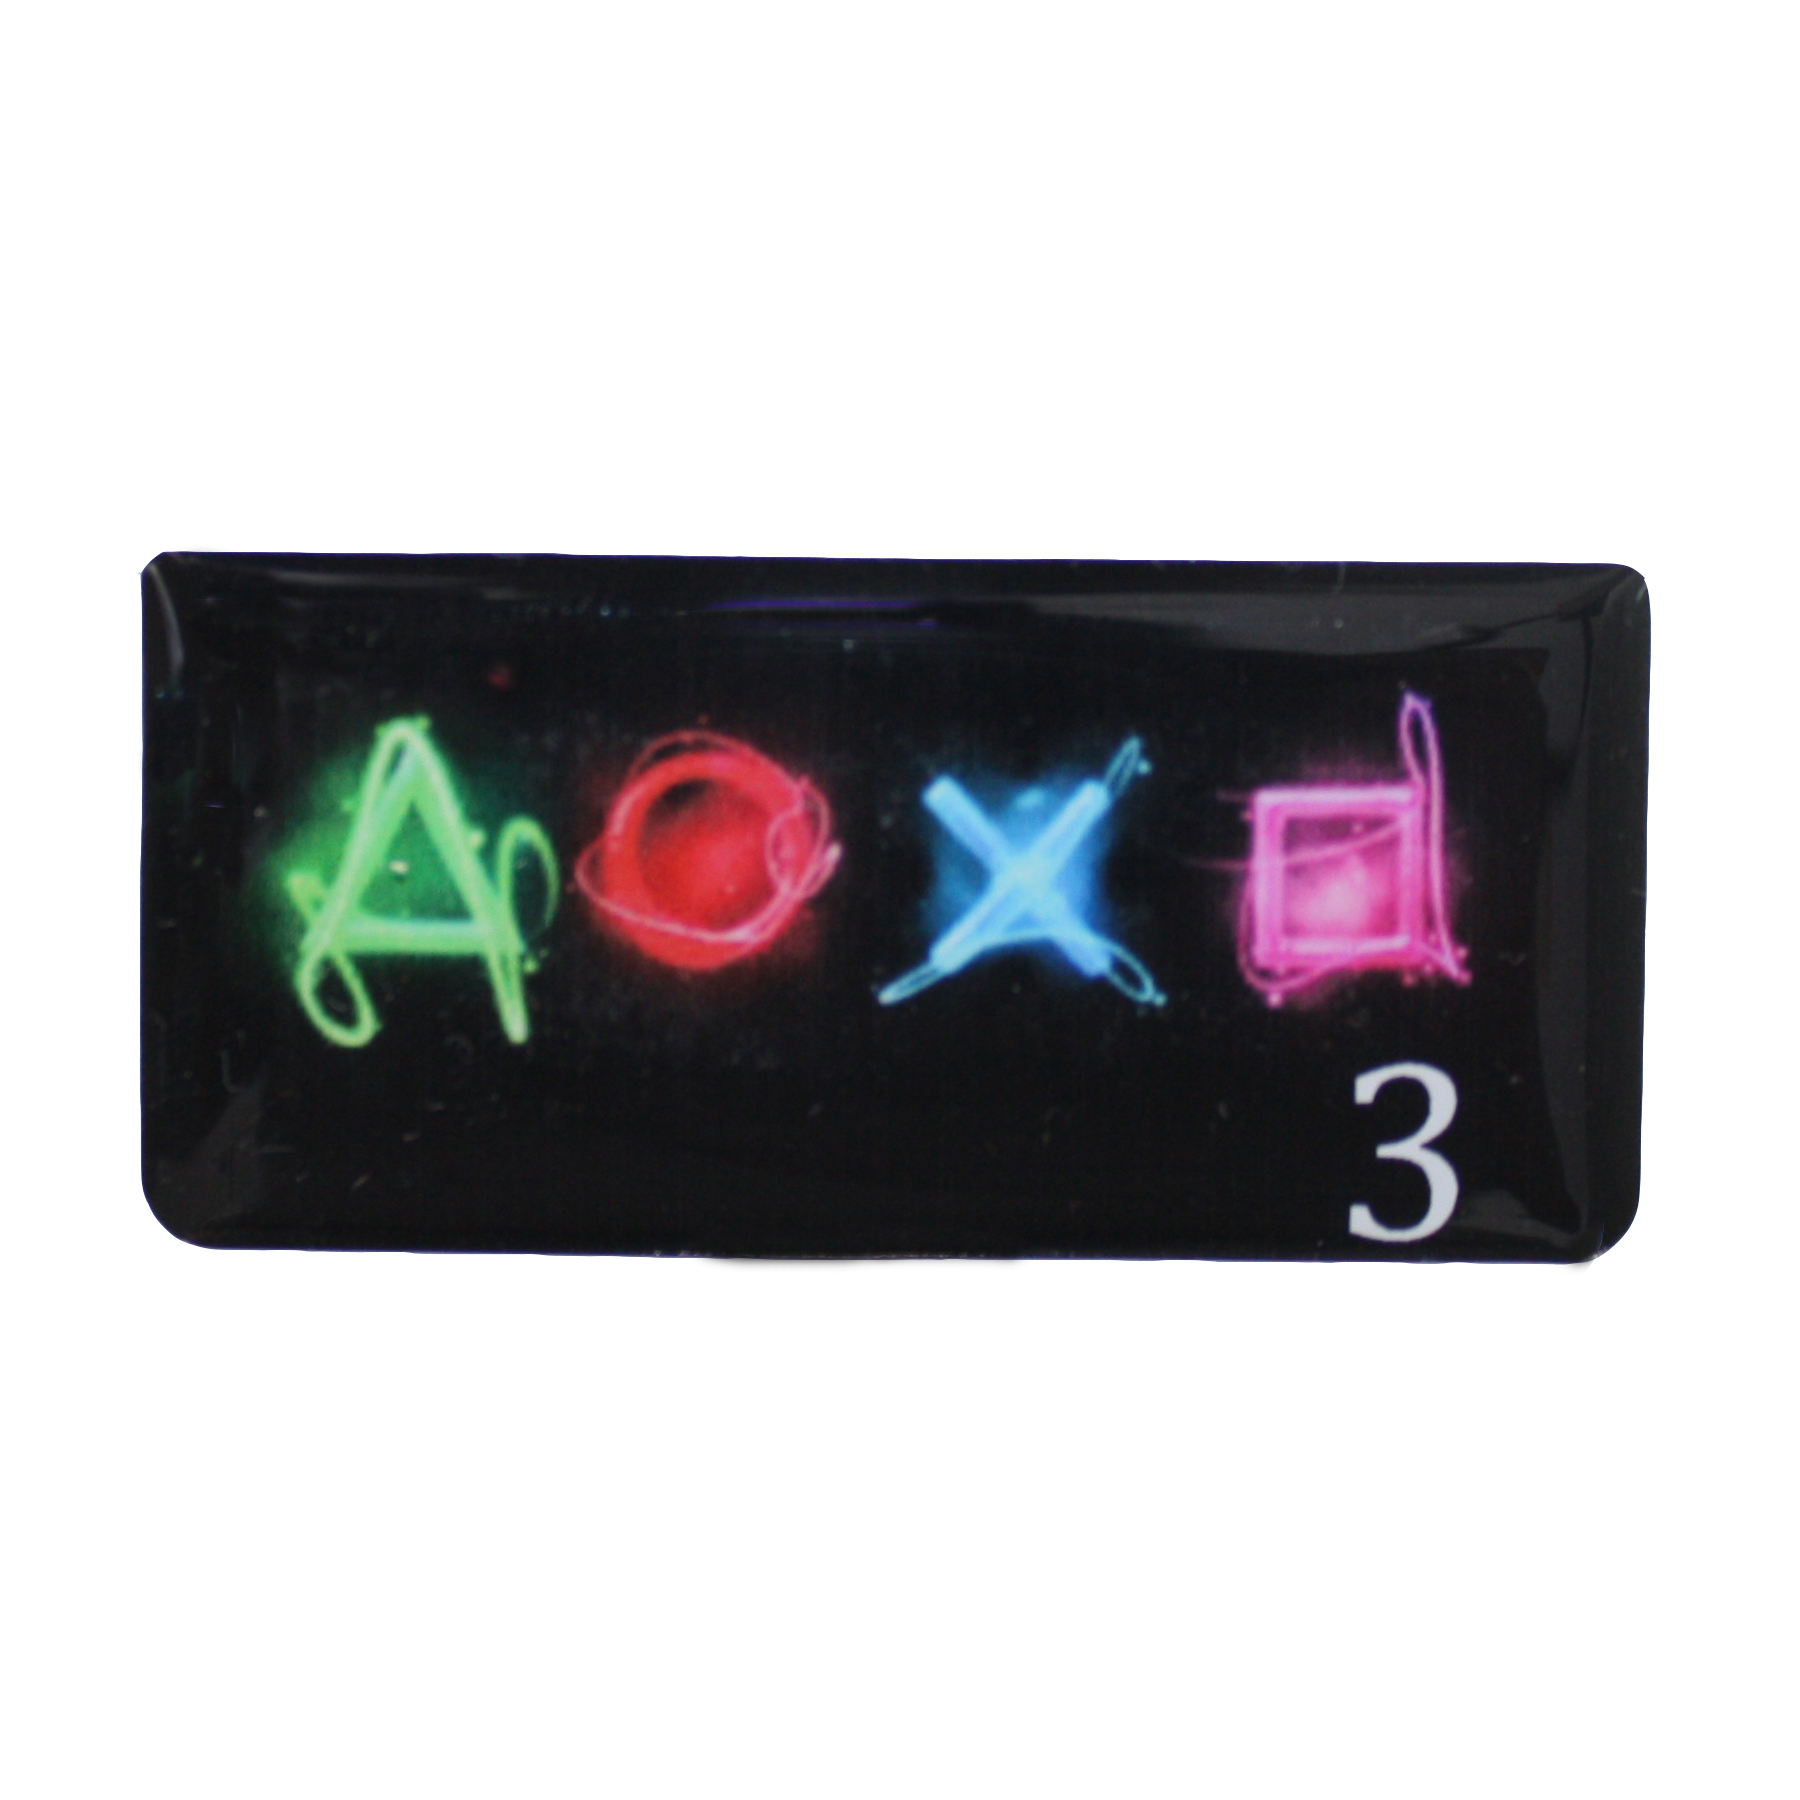 برچسب تاچ پد دسته بازی PS4 مدل AOXO3